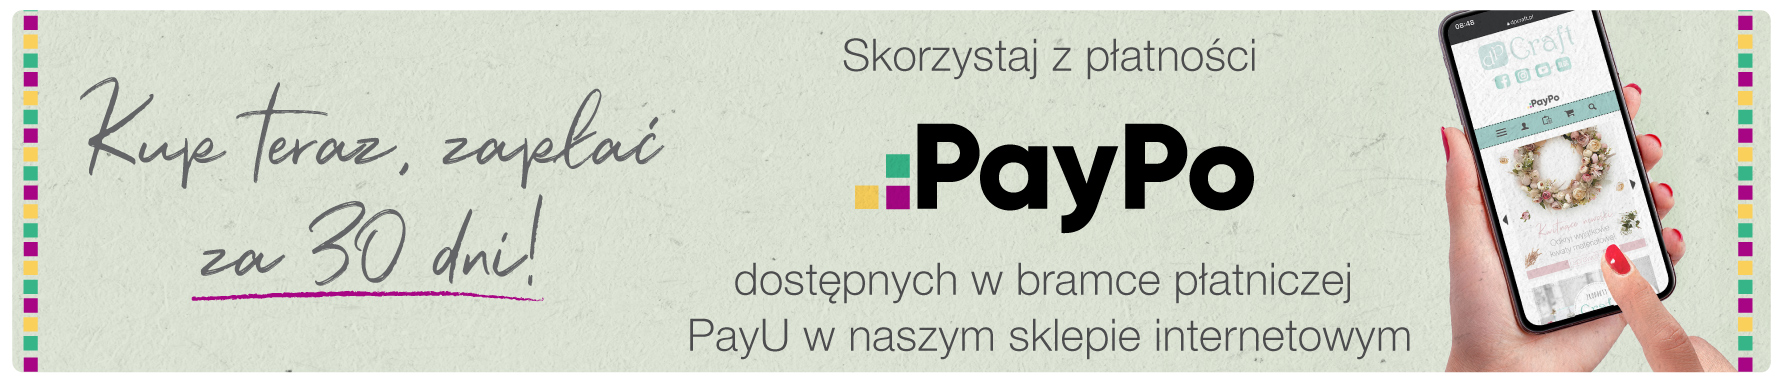 Możliwość opóźnionej płatności z PayPo